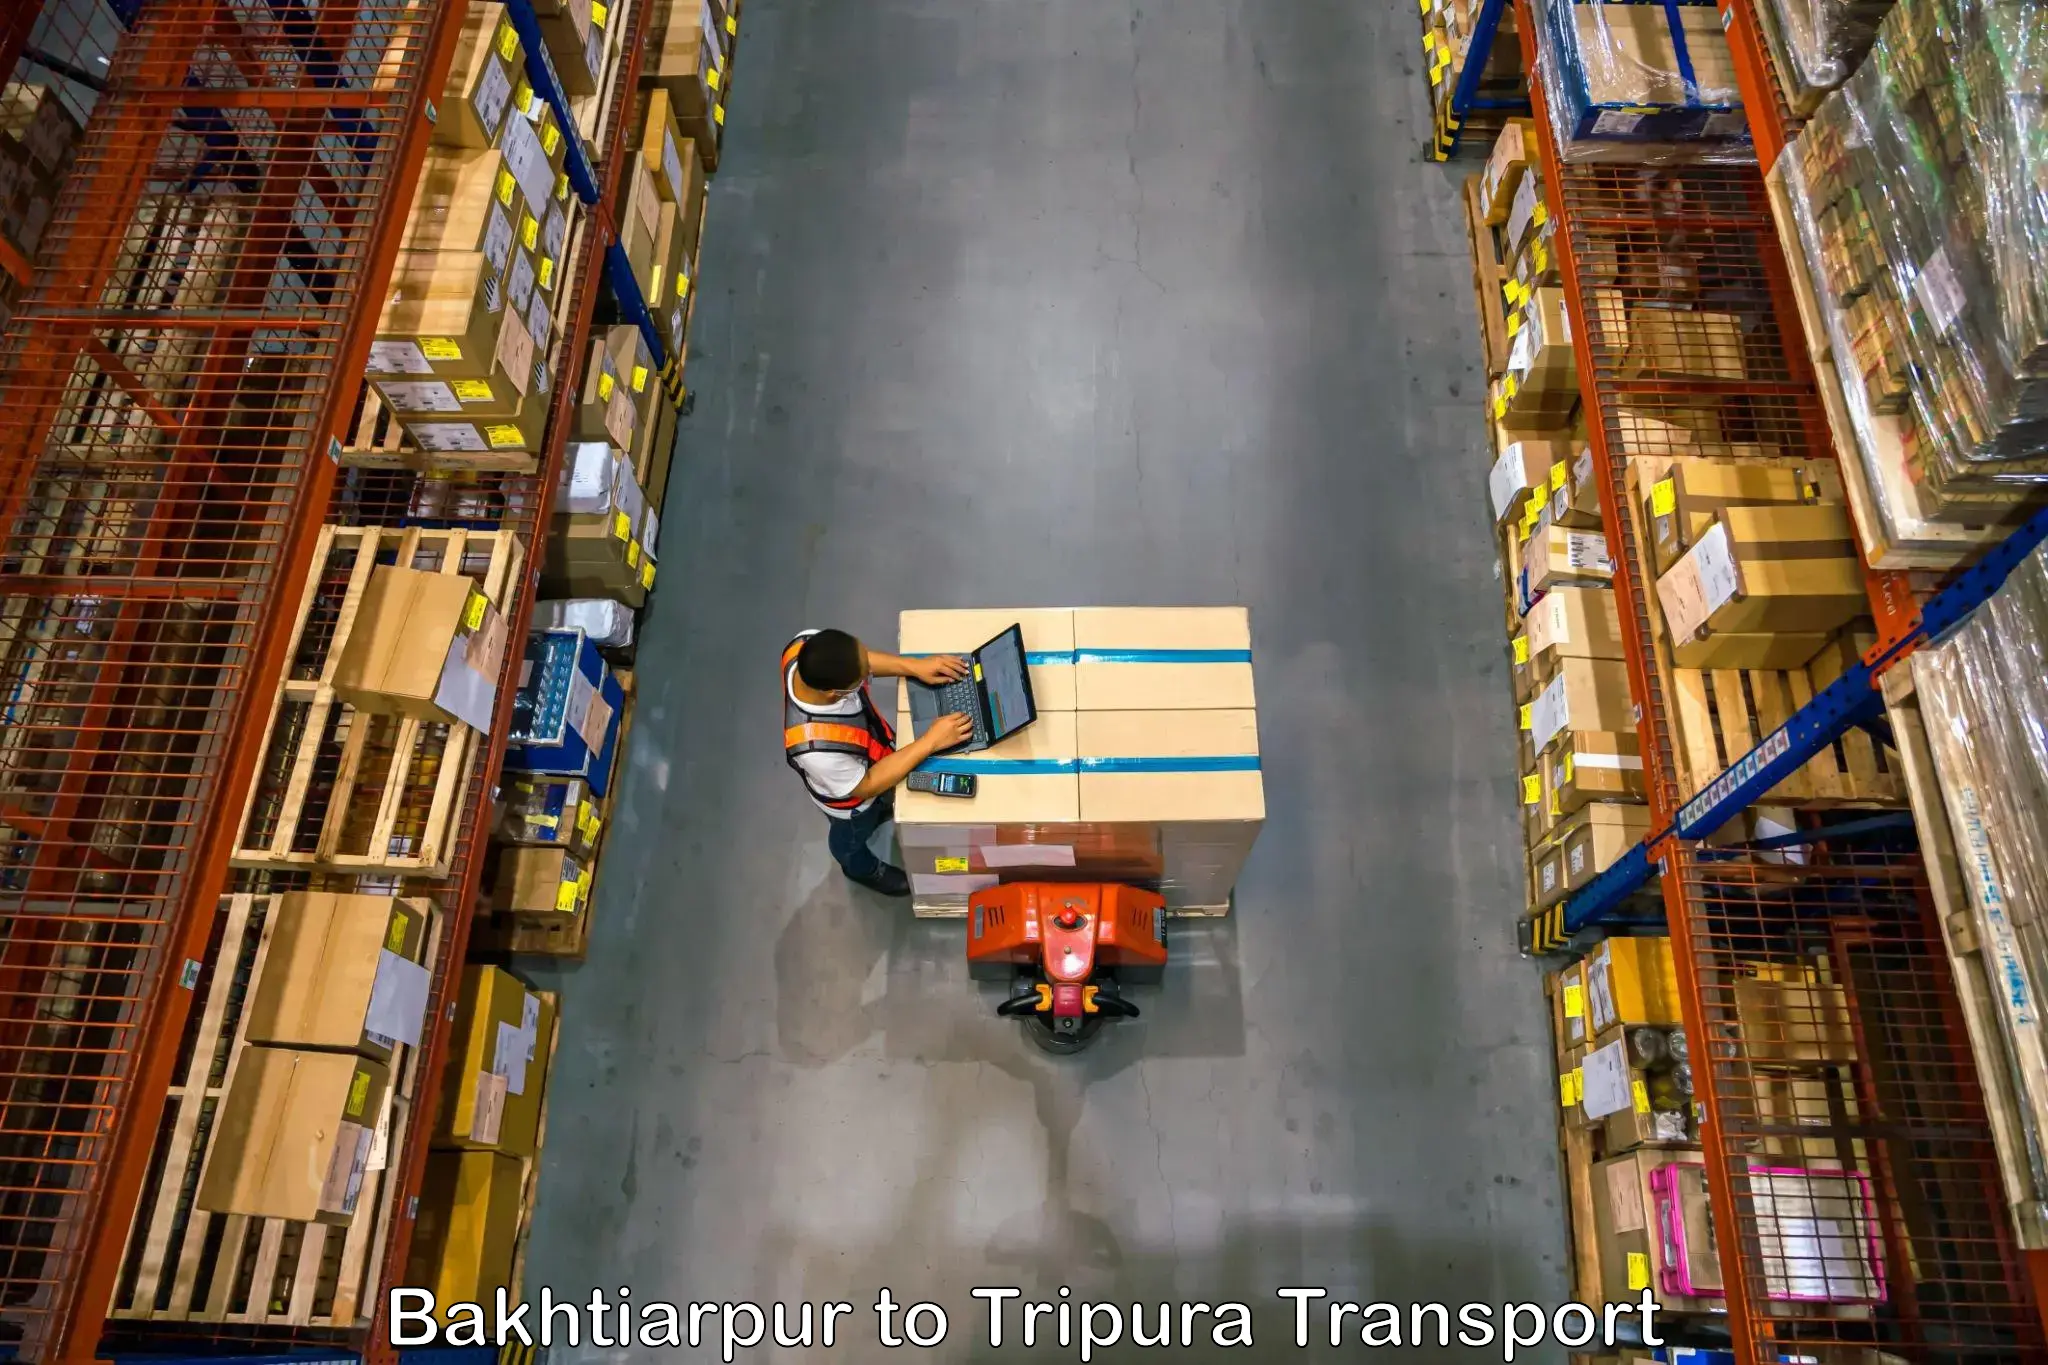 Container transport service Bakhtiarpur to IIIT Agartala